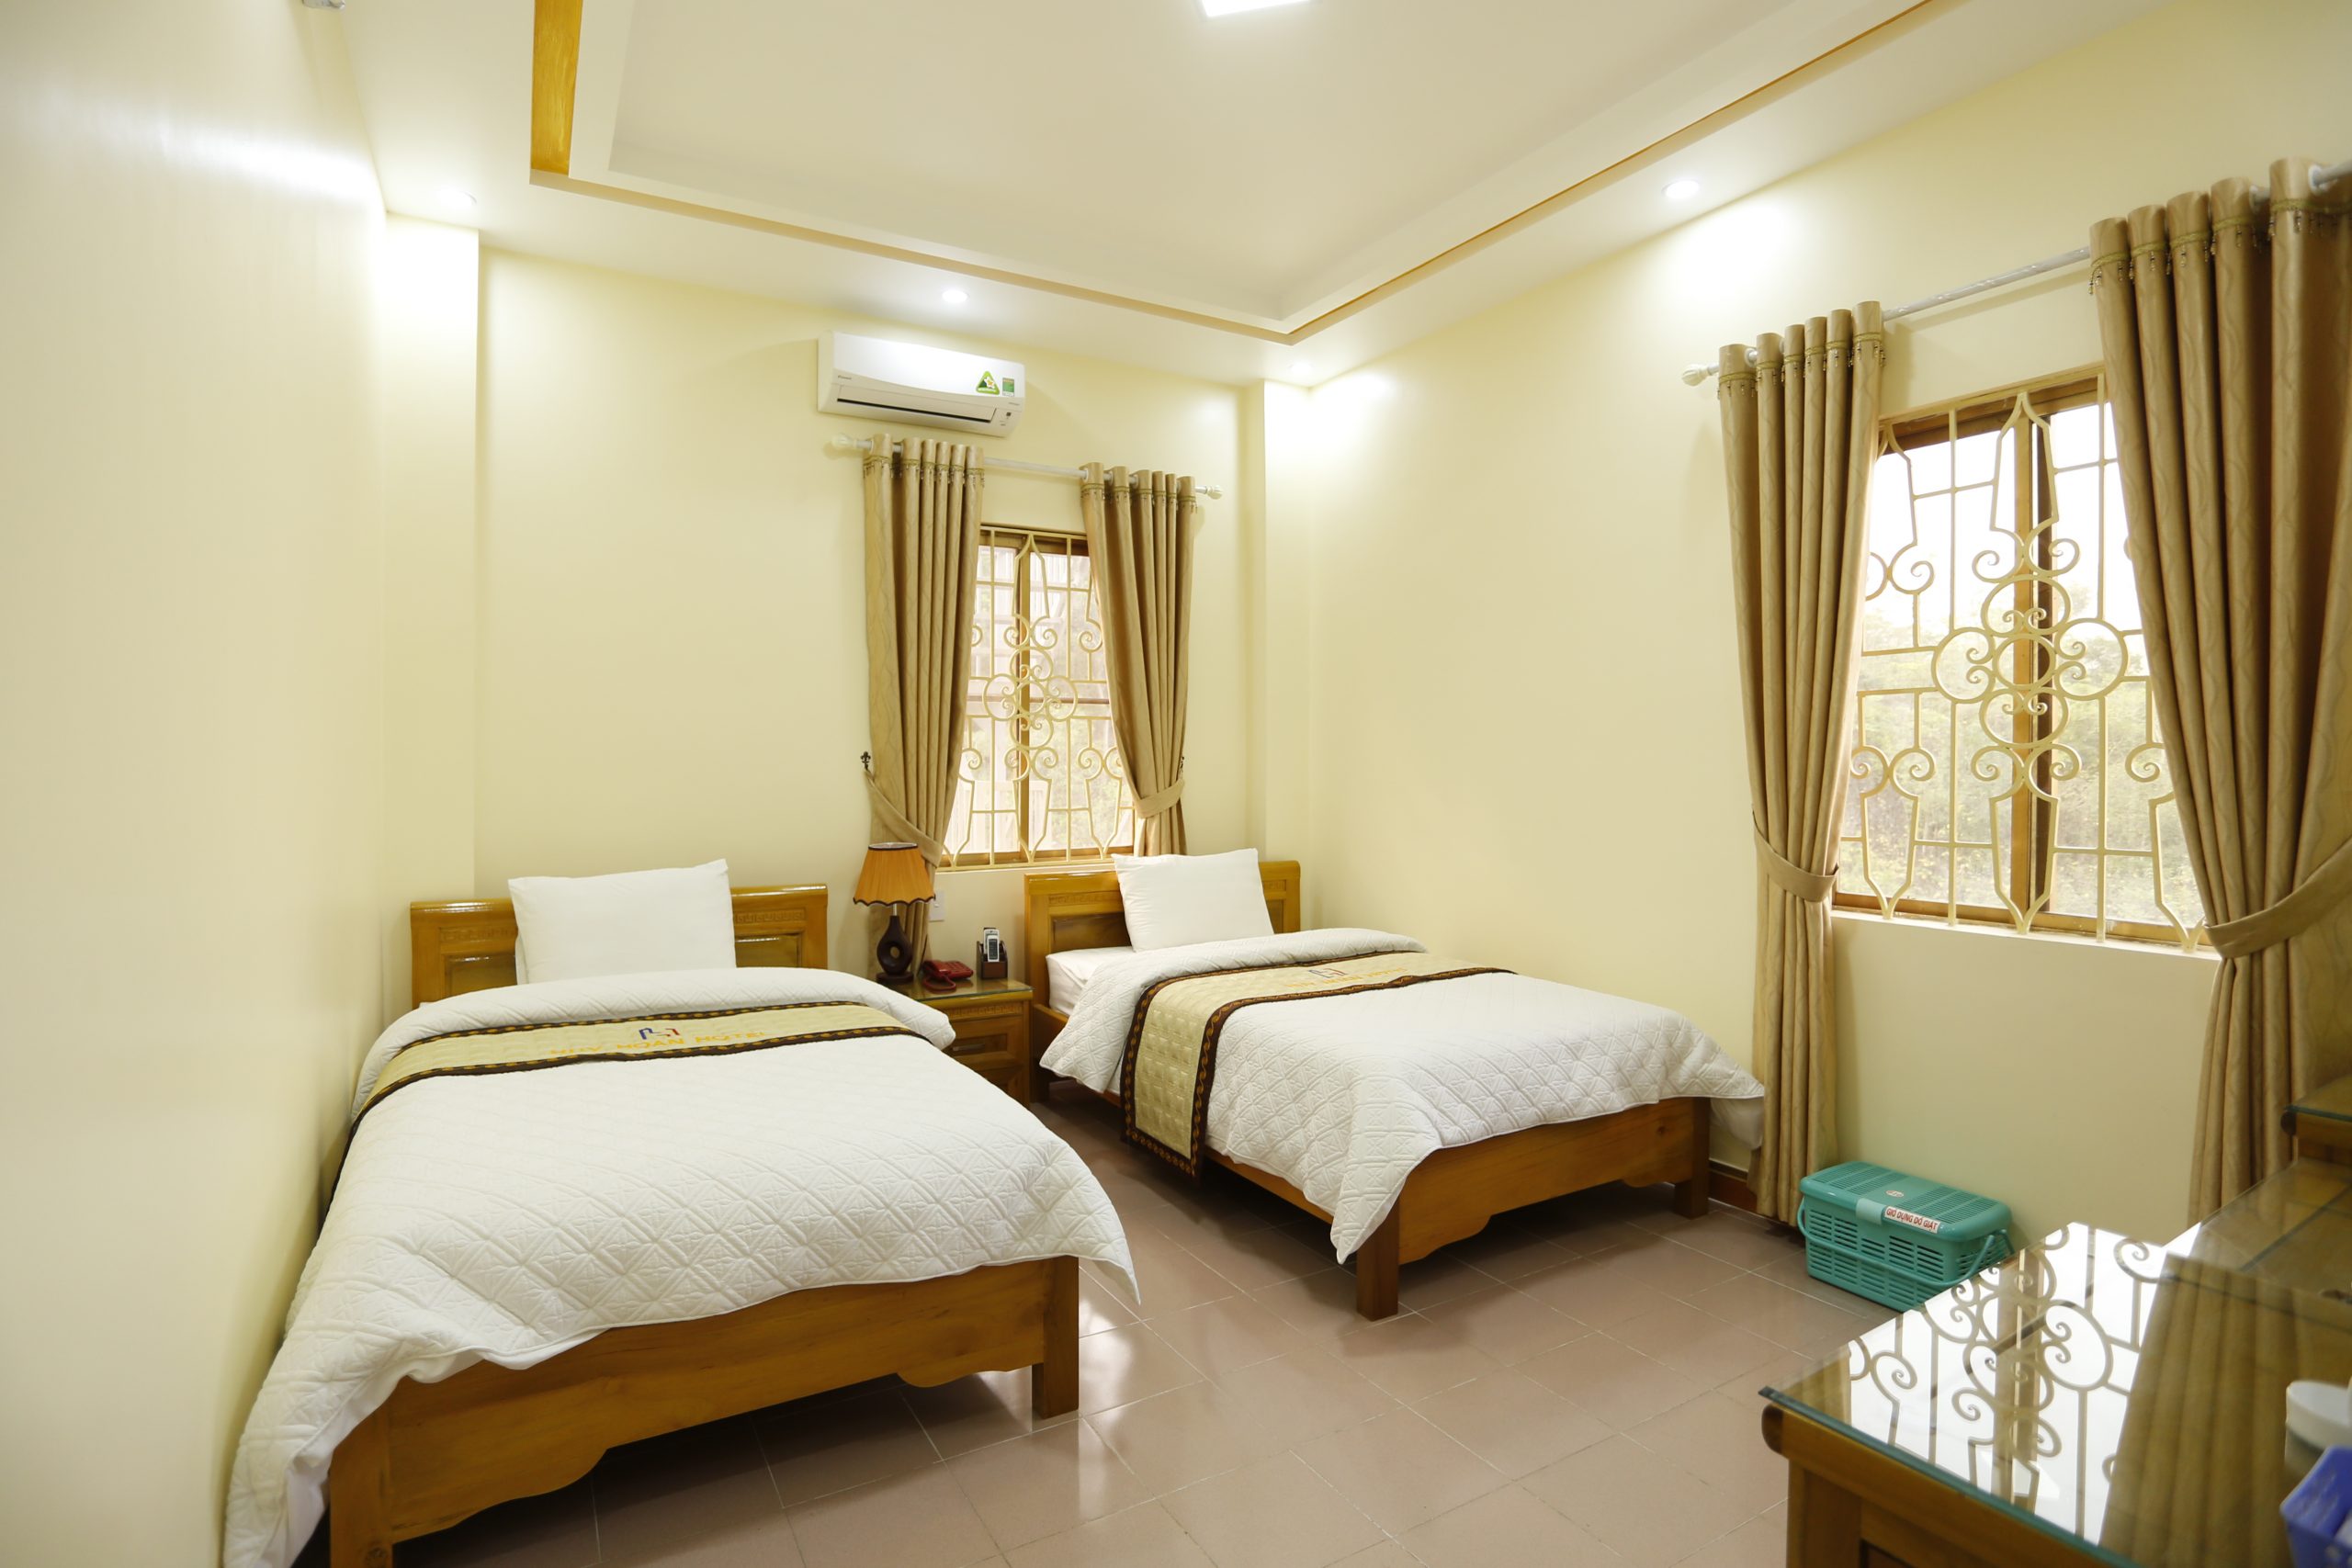 Nếu bạn muốn trải nghiệm một kỳ nghỉ tại Hà Giang, khách sạn chất lượng là nơi tốt nhất để đặt phòng. Tận hưởng khung cảnh đẹp với nhiều dịch vụ tiện ích tại khách sạn, đồng thời cũng có cơ hội khám phá vẻ đẹp của thành phố. Xem hình ảnh để biết thêm chi tiết.